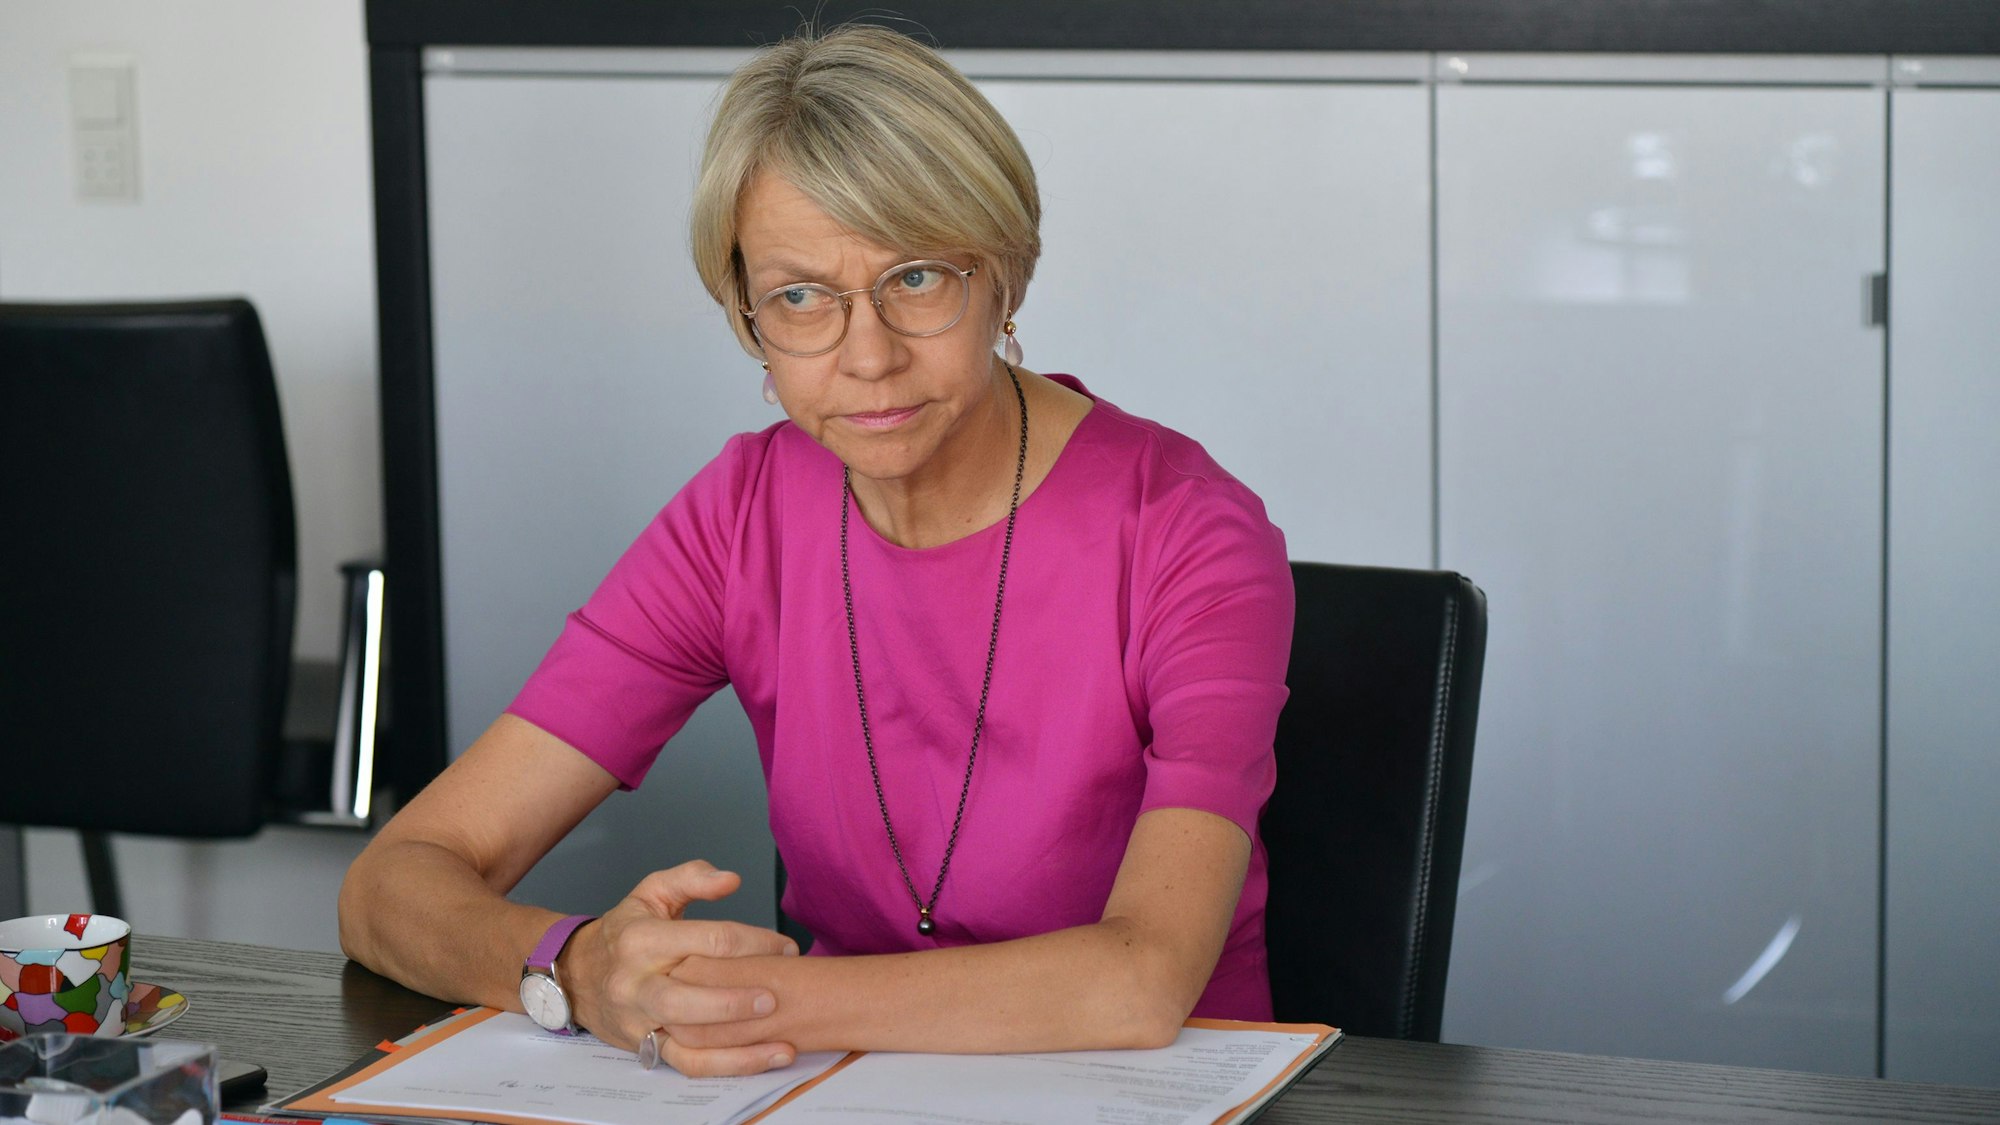 20.07.2022, Düsseldorf: Dorothee Feller, neue Bildungsministerin in Nordrhein-Westfalen. Foto: Bernd Obermann